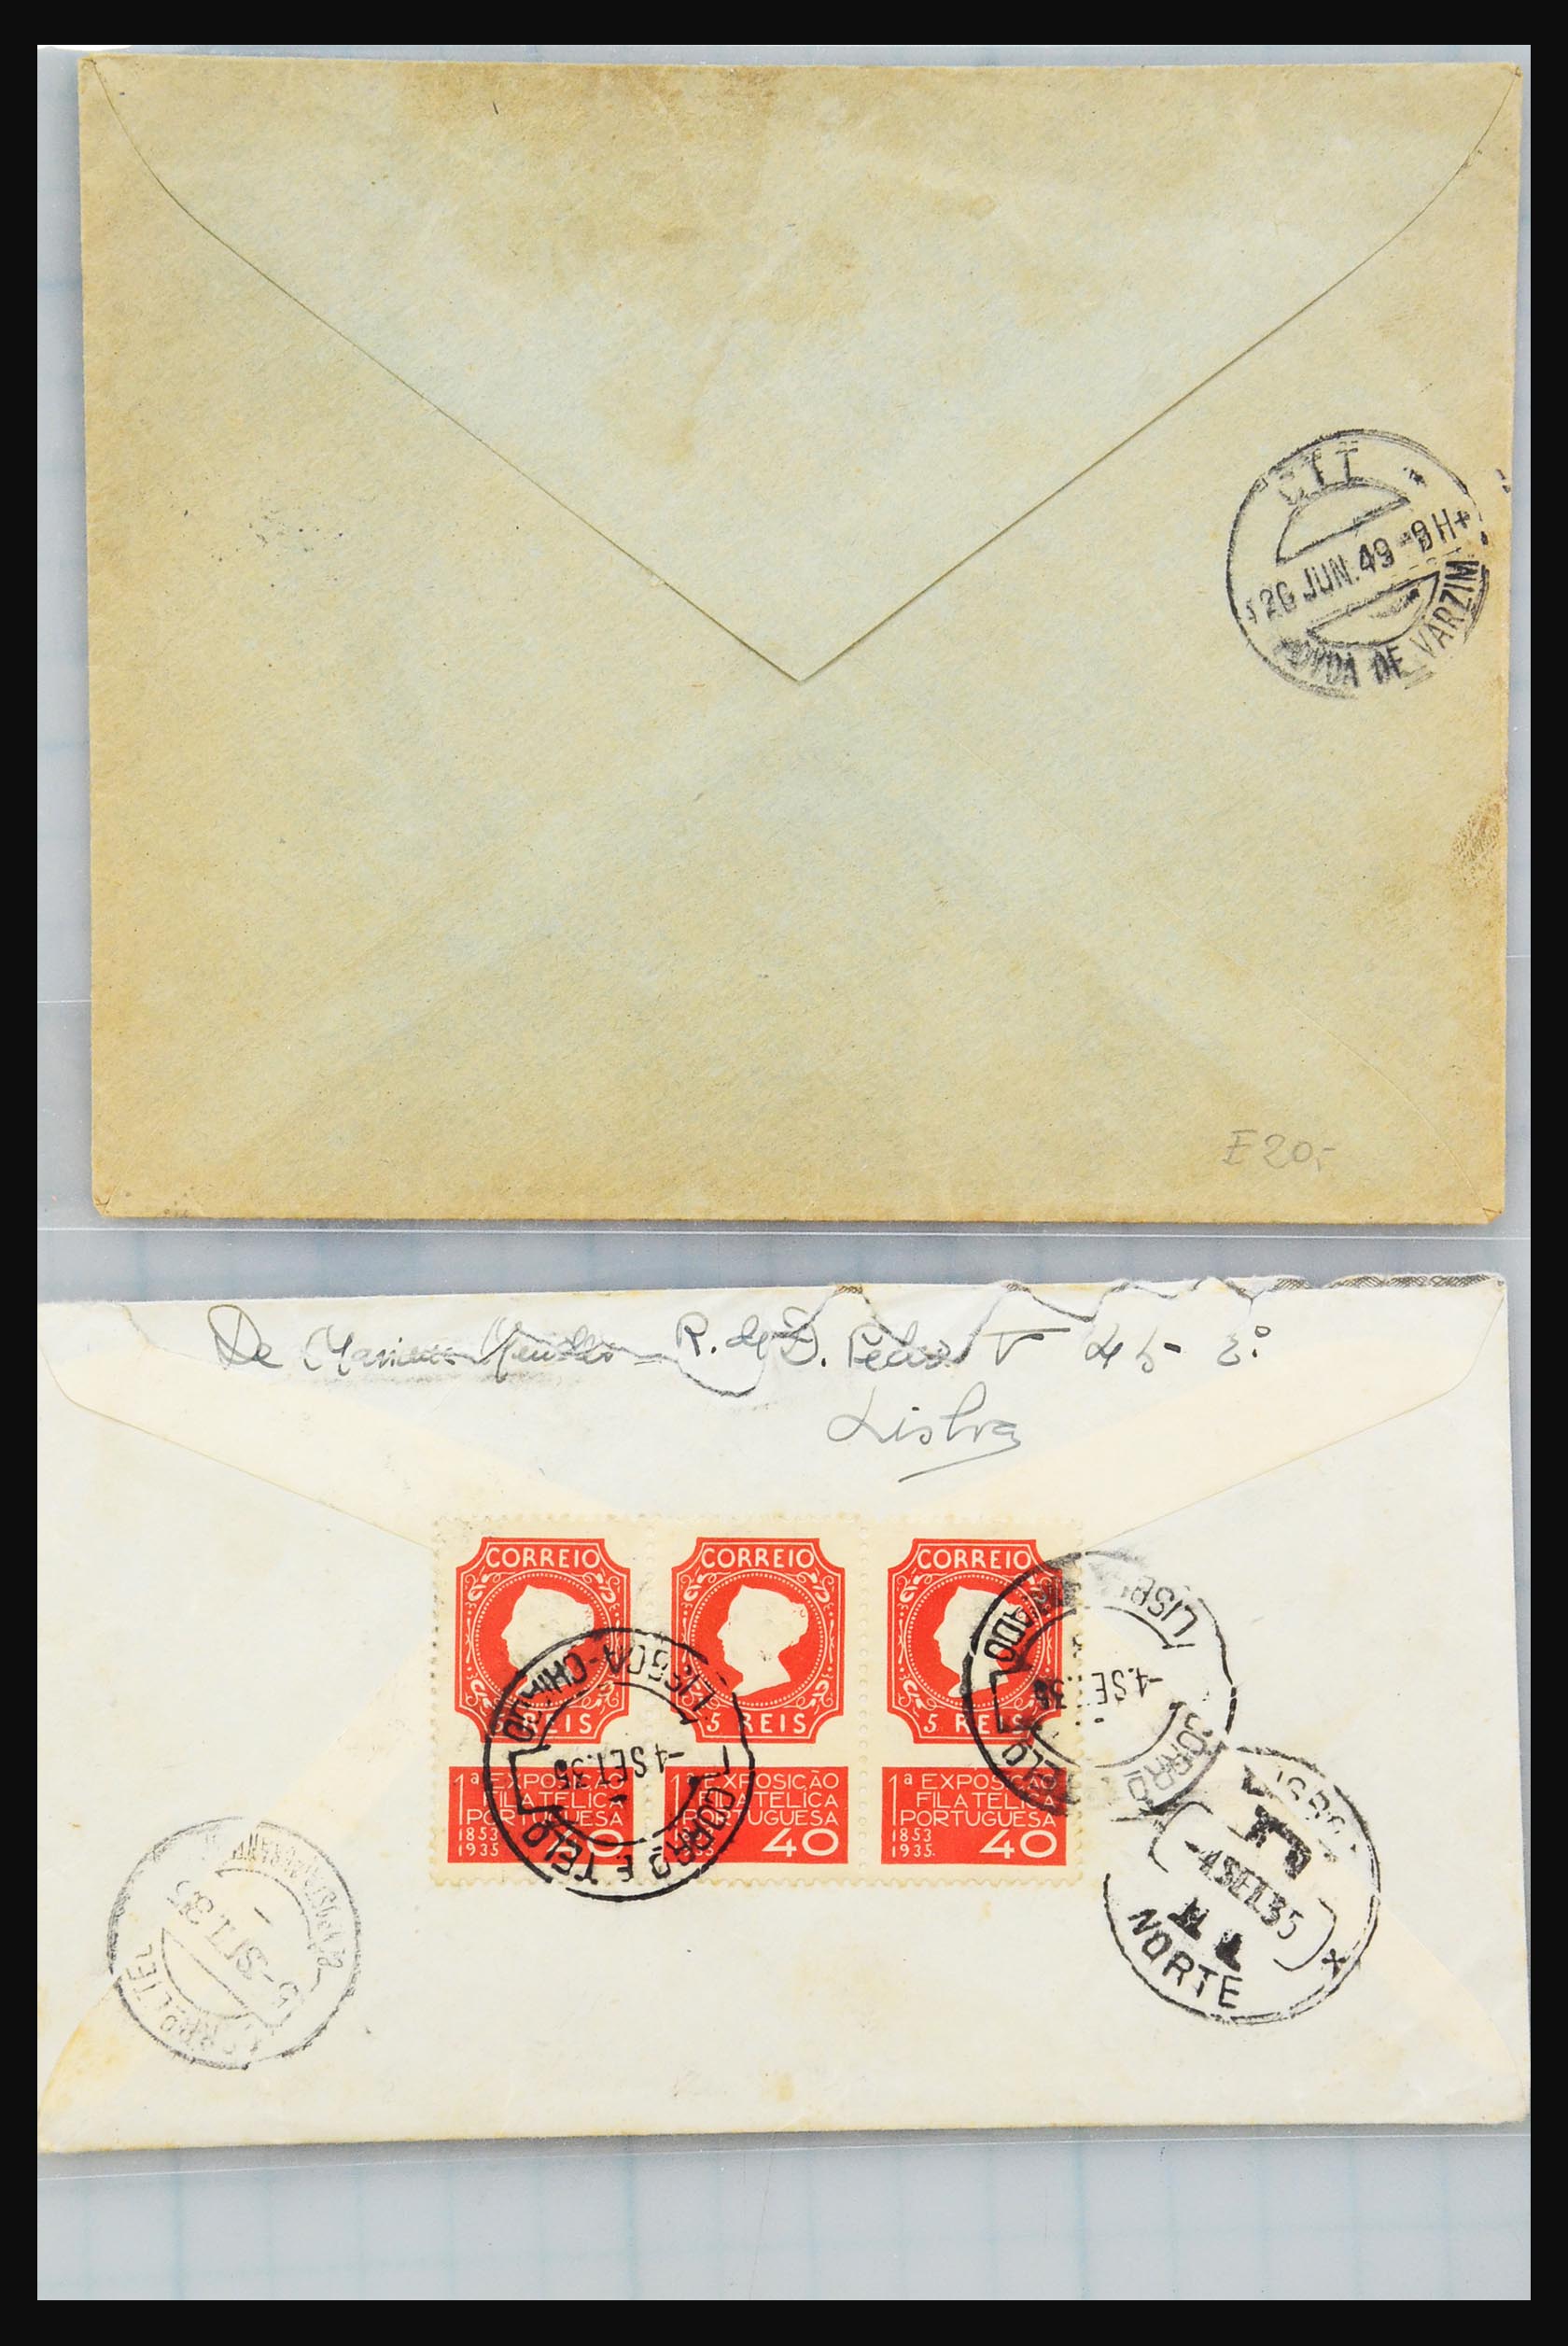 31358 193 - 31358 Portugal/Luxemburg/Griekenland brieven 1880-1960.